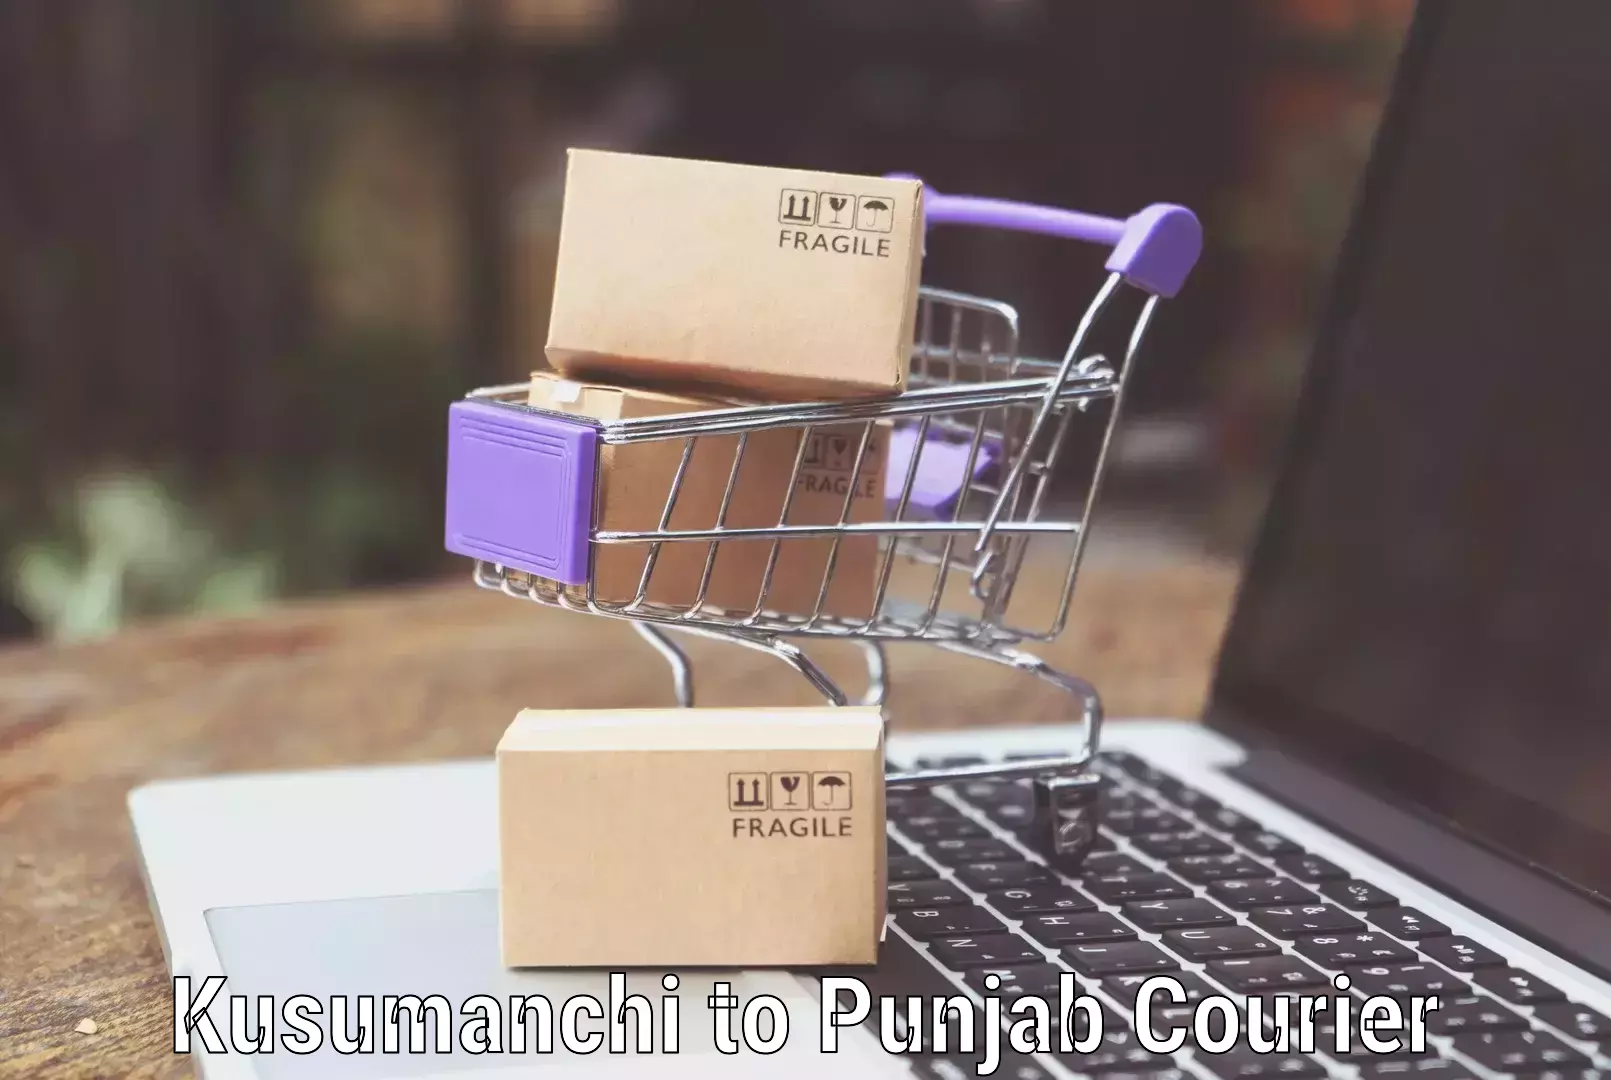 Luggage courier services Kusumanchi to Central University of Punjab Bathinda